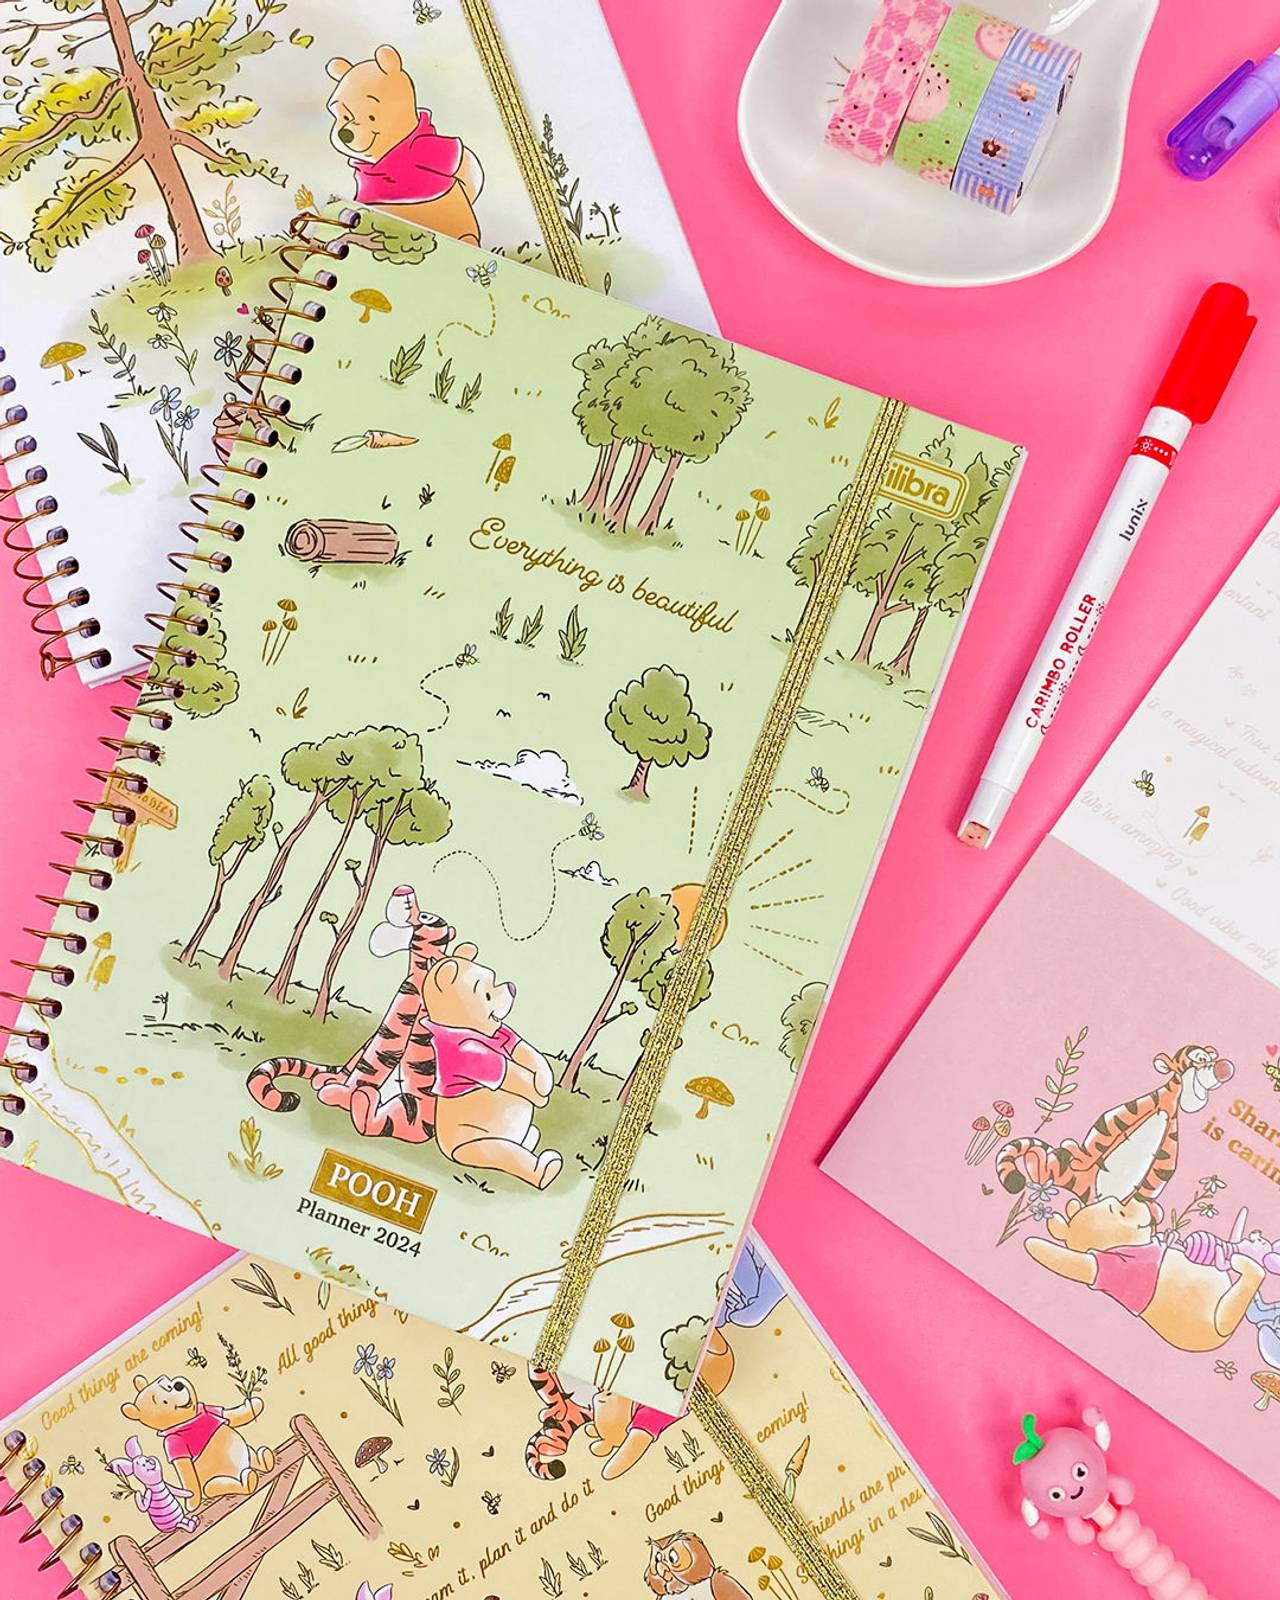 Planner 2024 do Pooh com desenhos e acessórios em rosa.